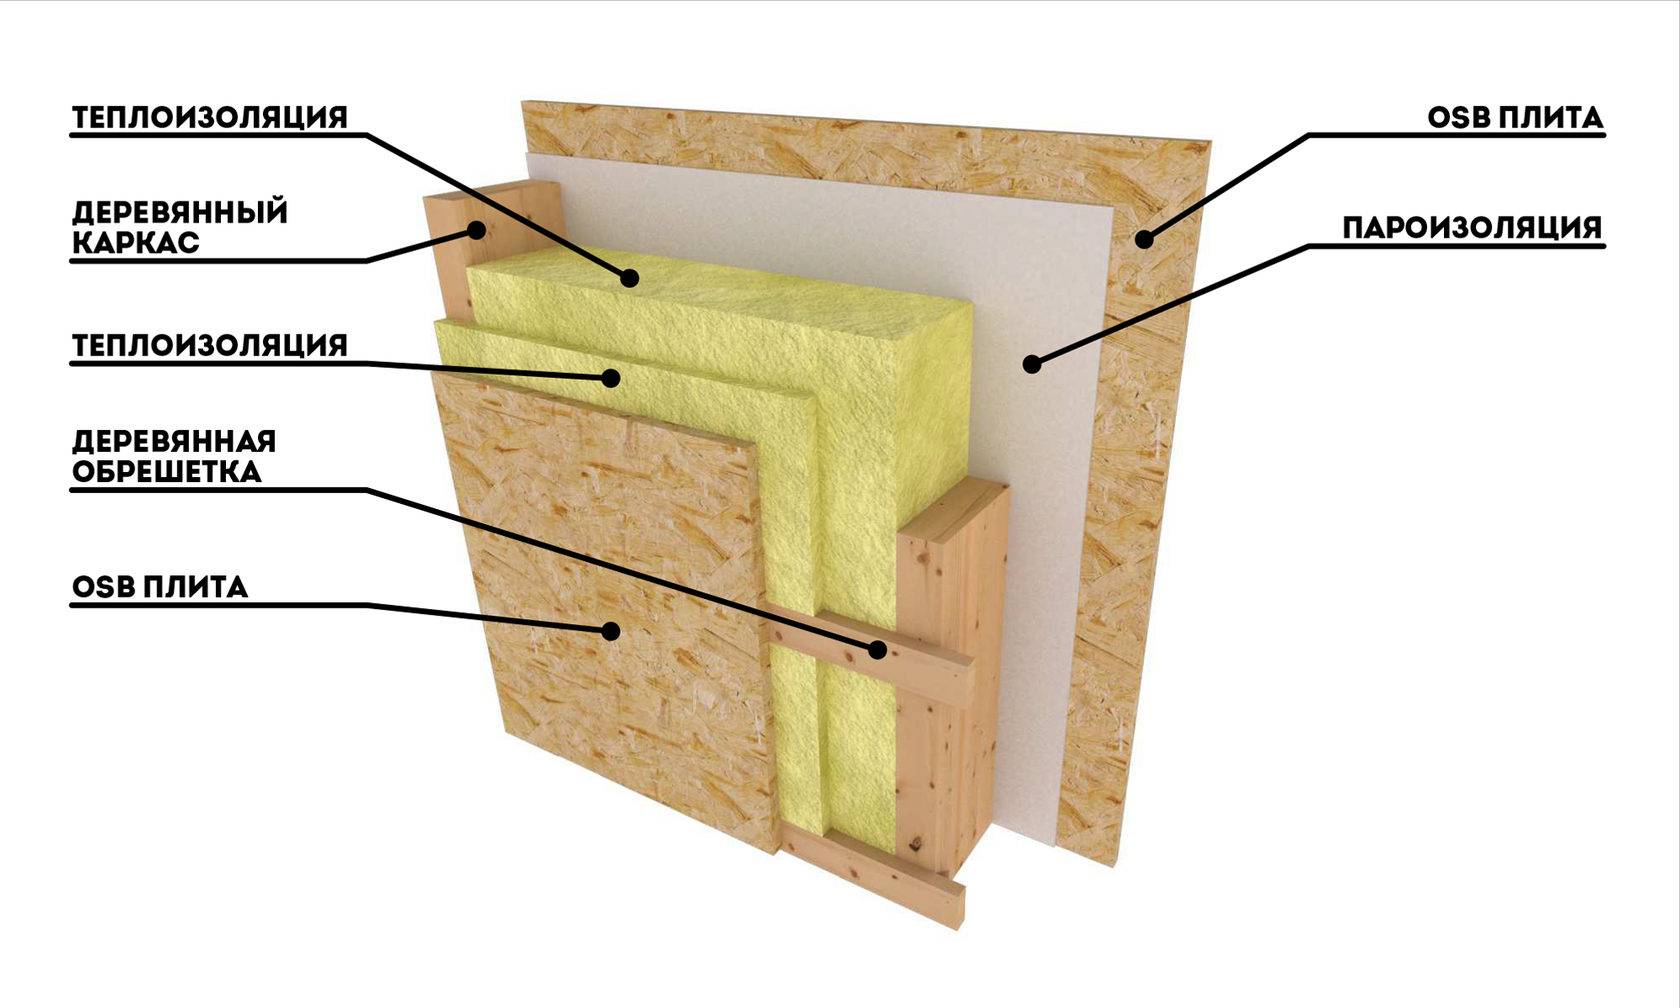 Утепление стен дома: чем и как лучше произвести теплоизоляцию в частном строении, современные материалы-утеплители